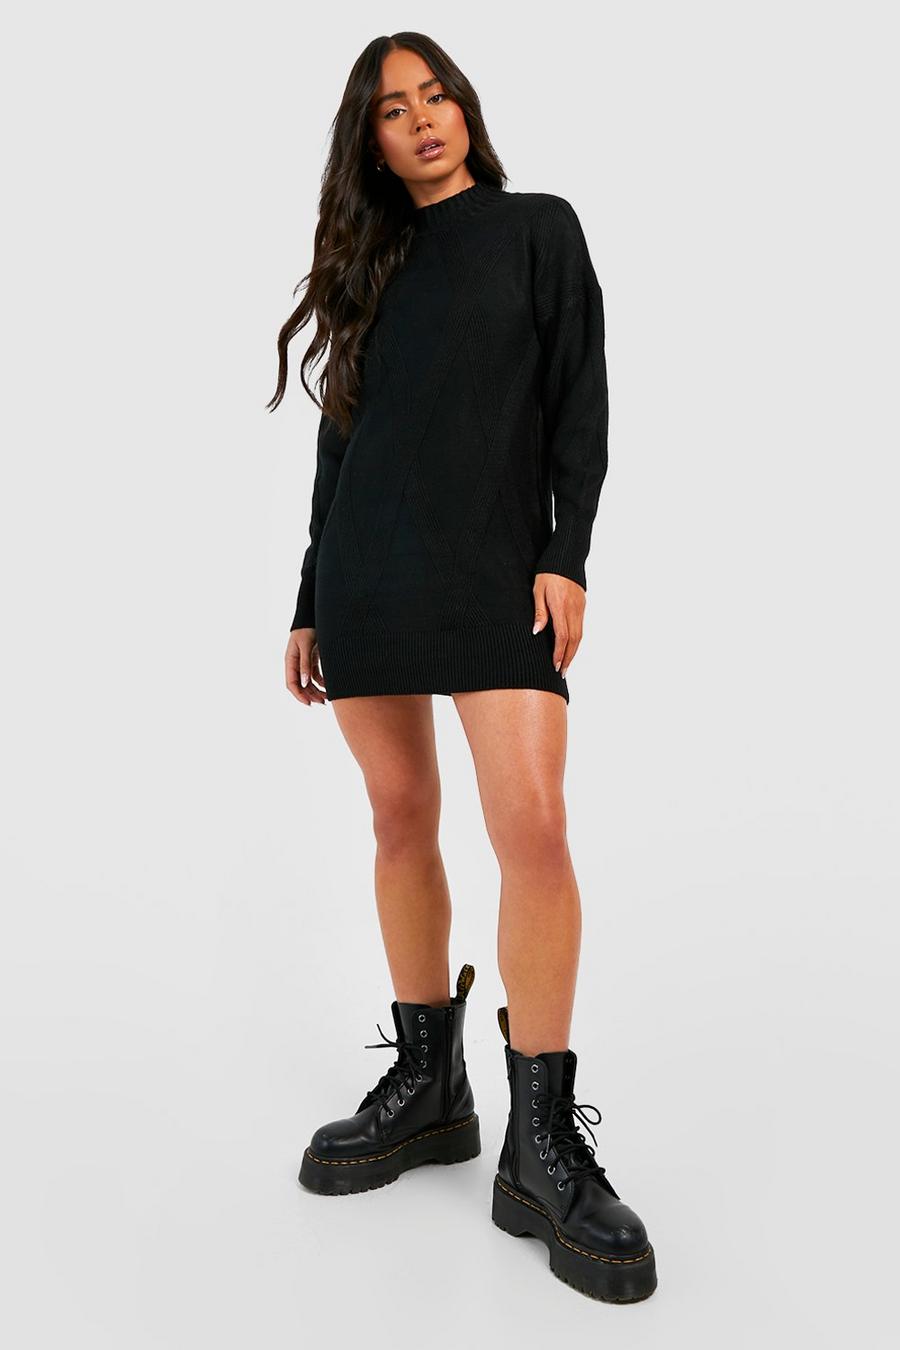 Black Petite Turtleneck Knitted Jumper Dress